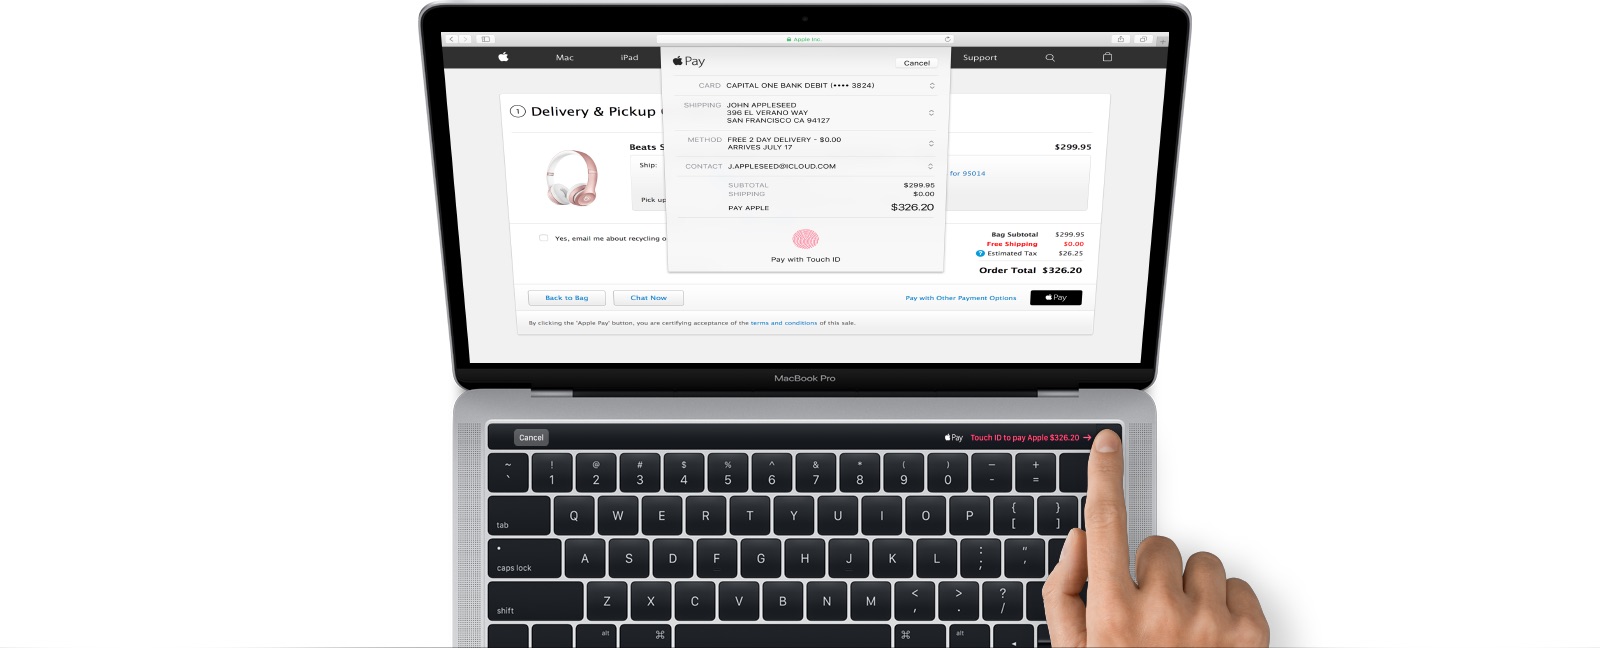 Rò rỉ thay đổi thiết kế, Magic Toolbar trên Macbook Pro mới